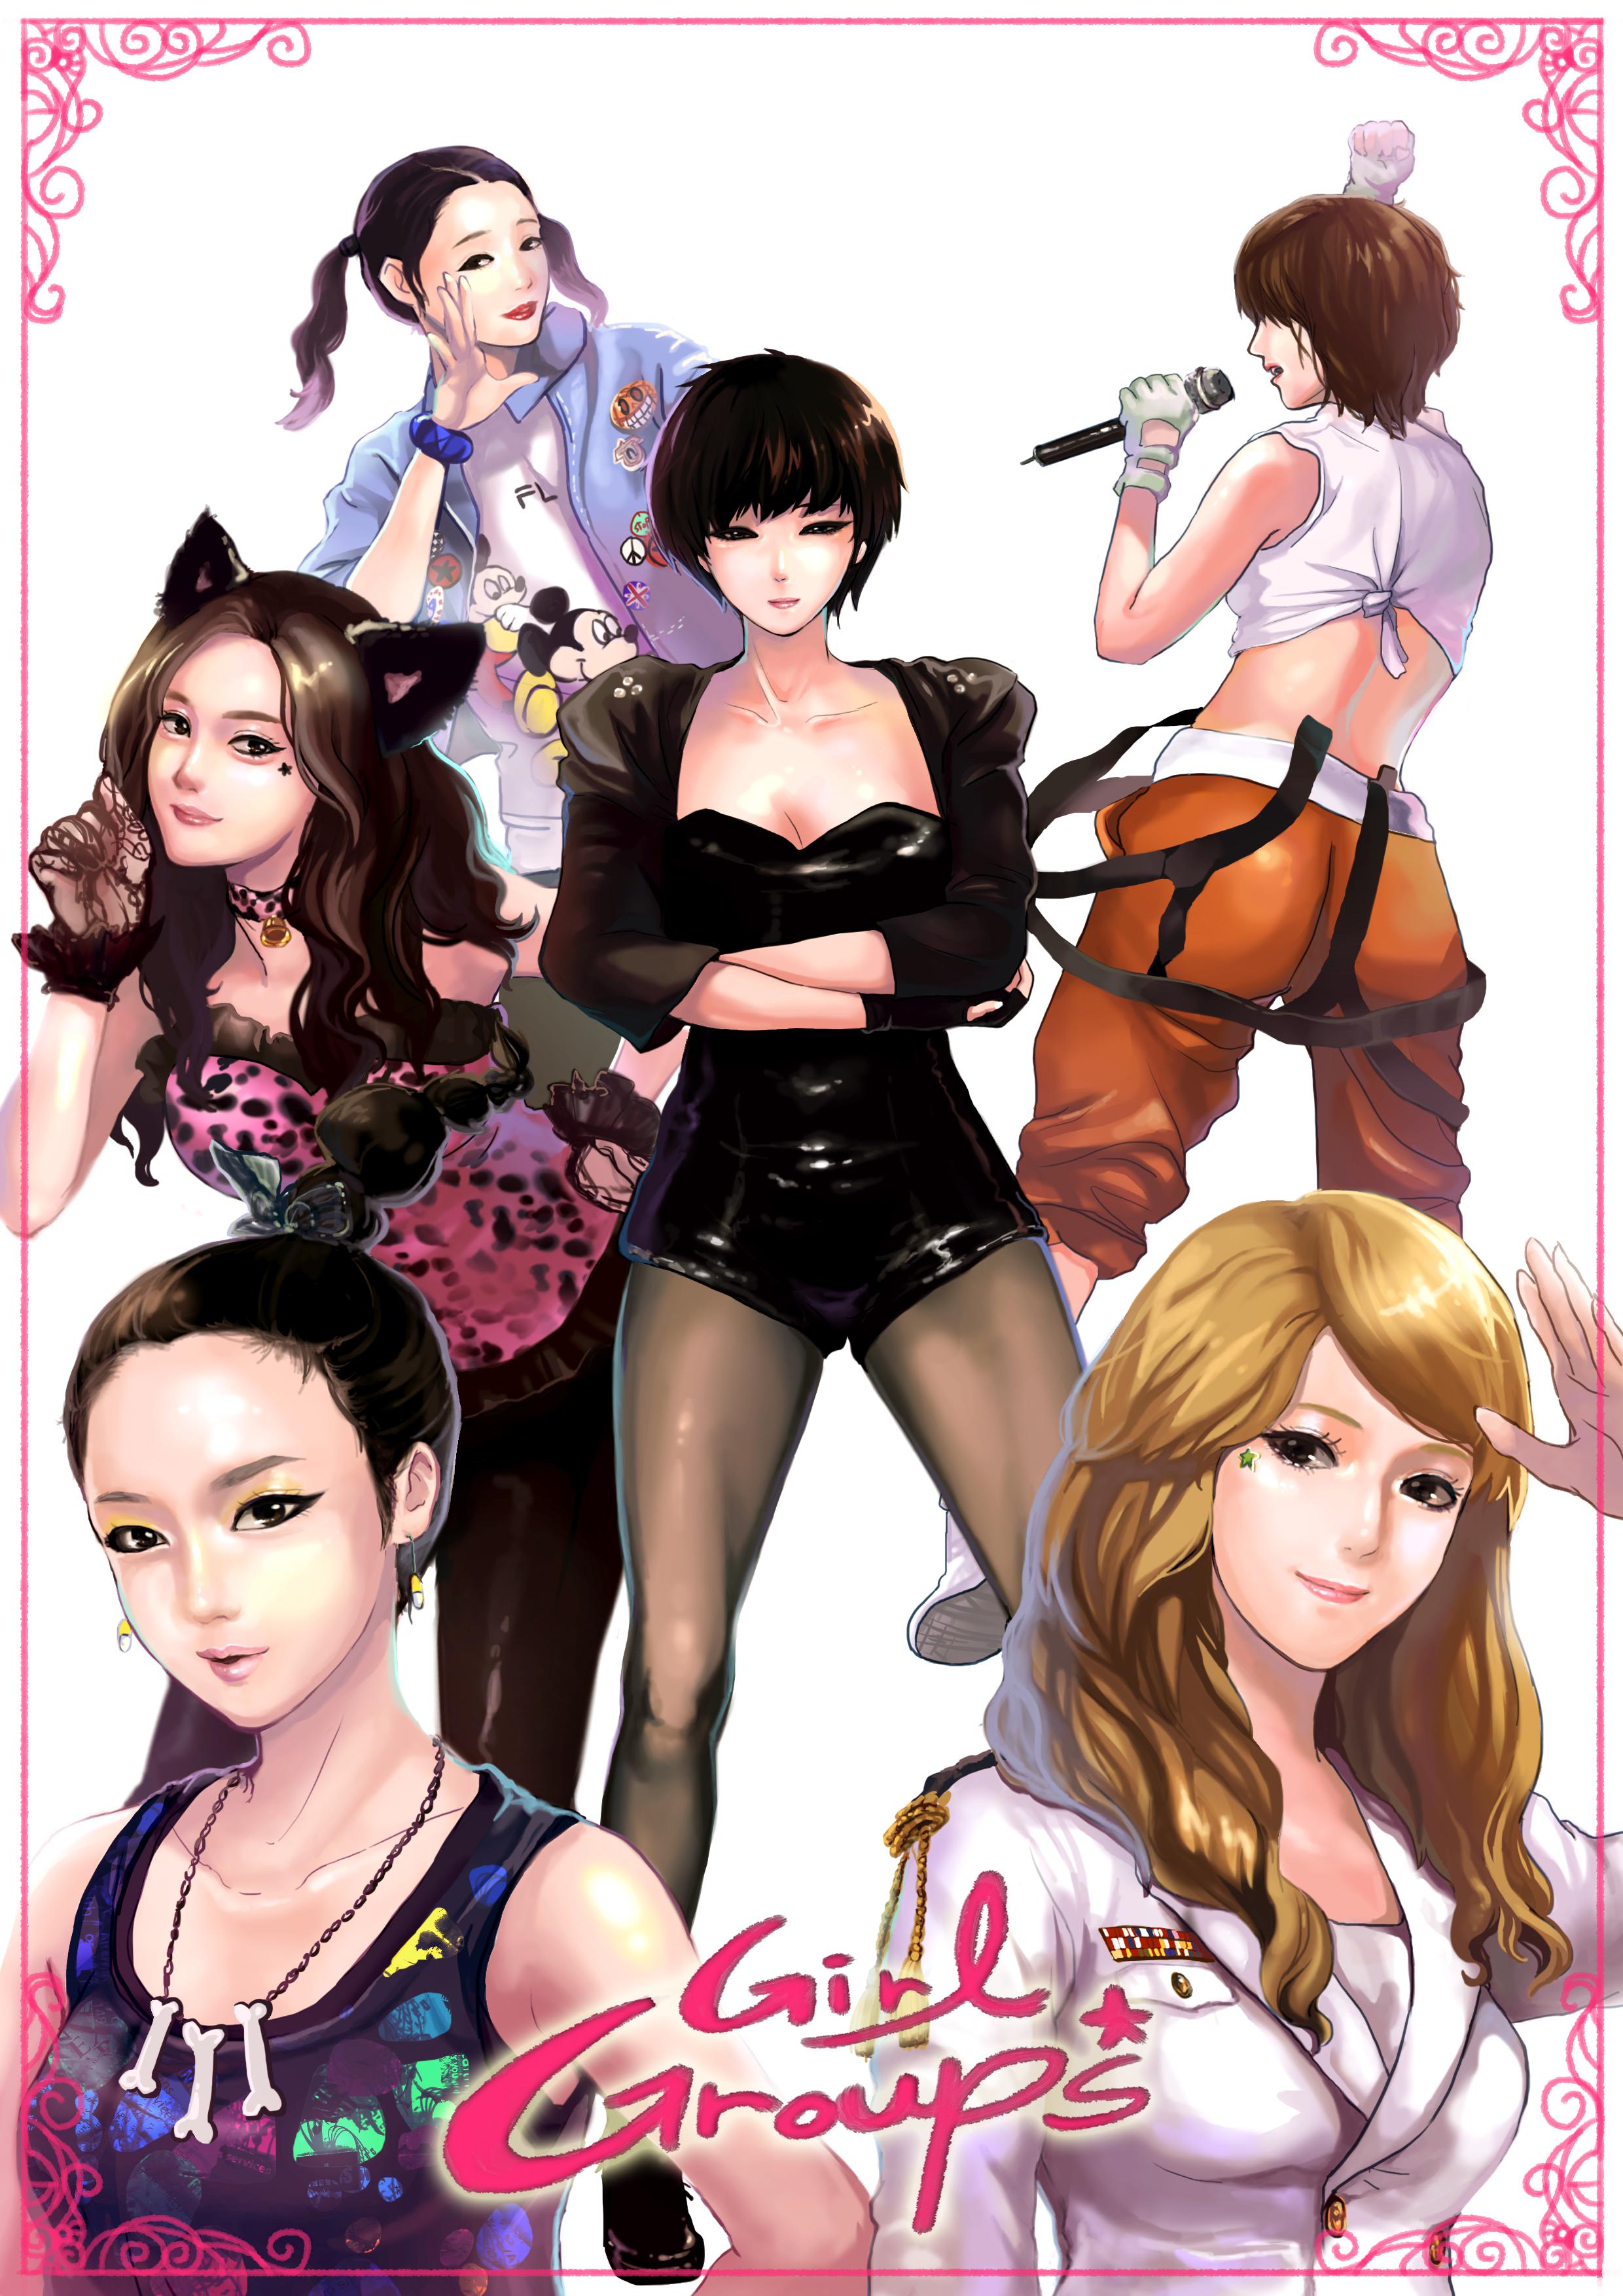 2010年 韓国 girl groups插画图片壁纸